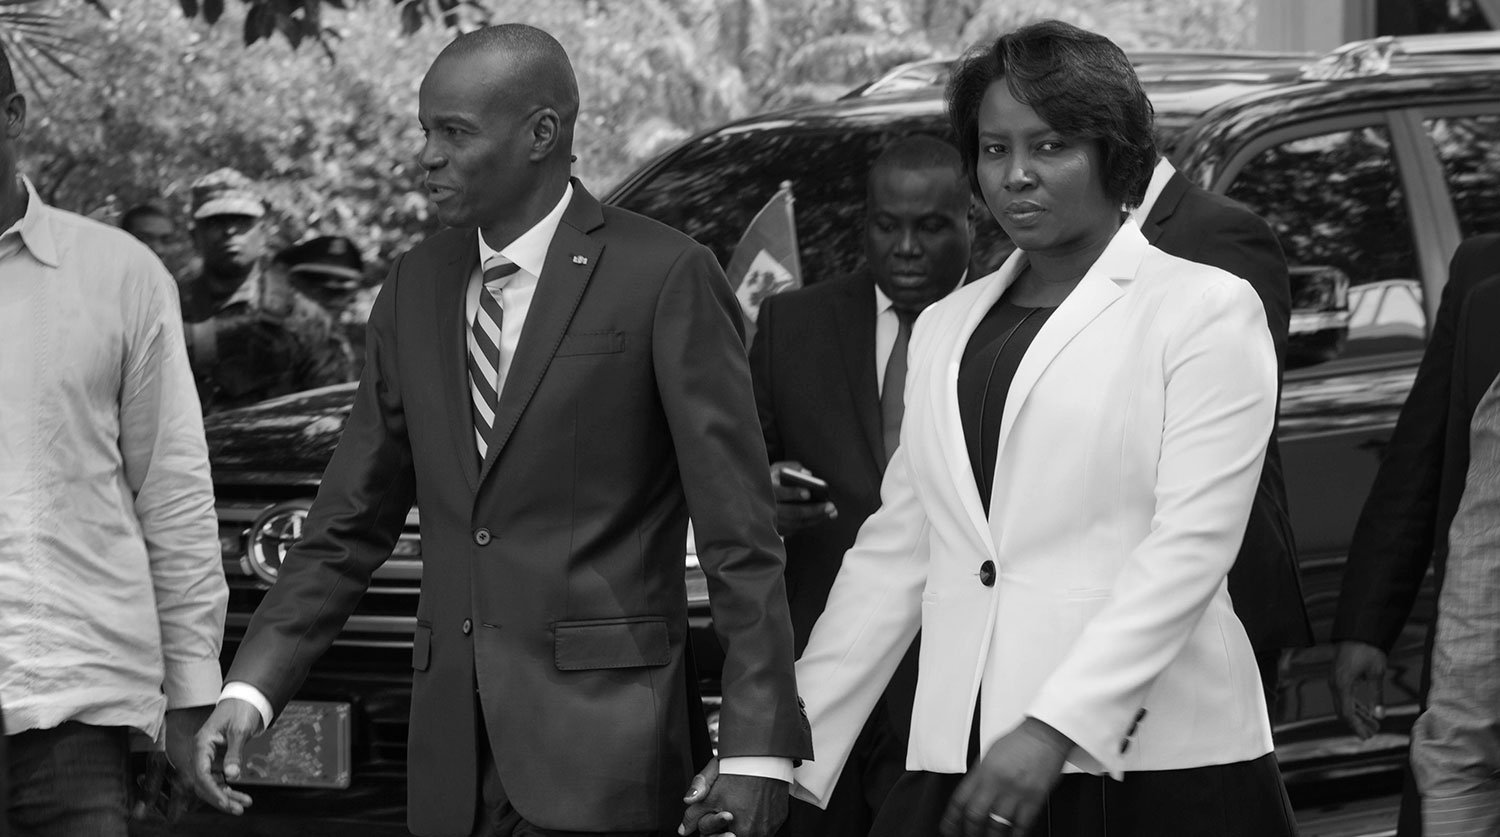 Հայիթիի սպանված նախագահի տիկինը մահացել է ստացած վիրավորումից